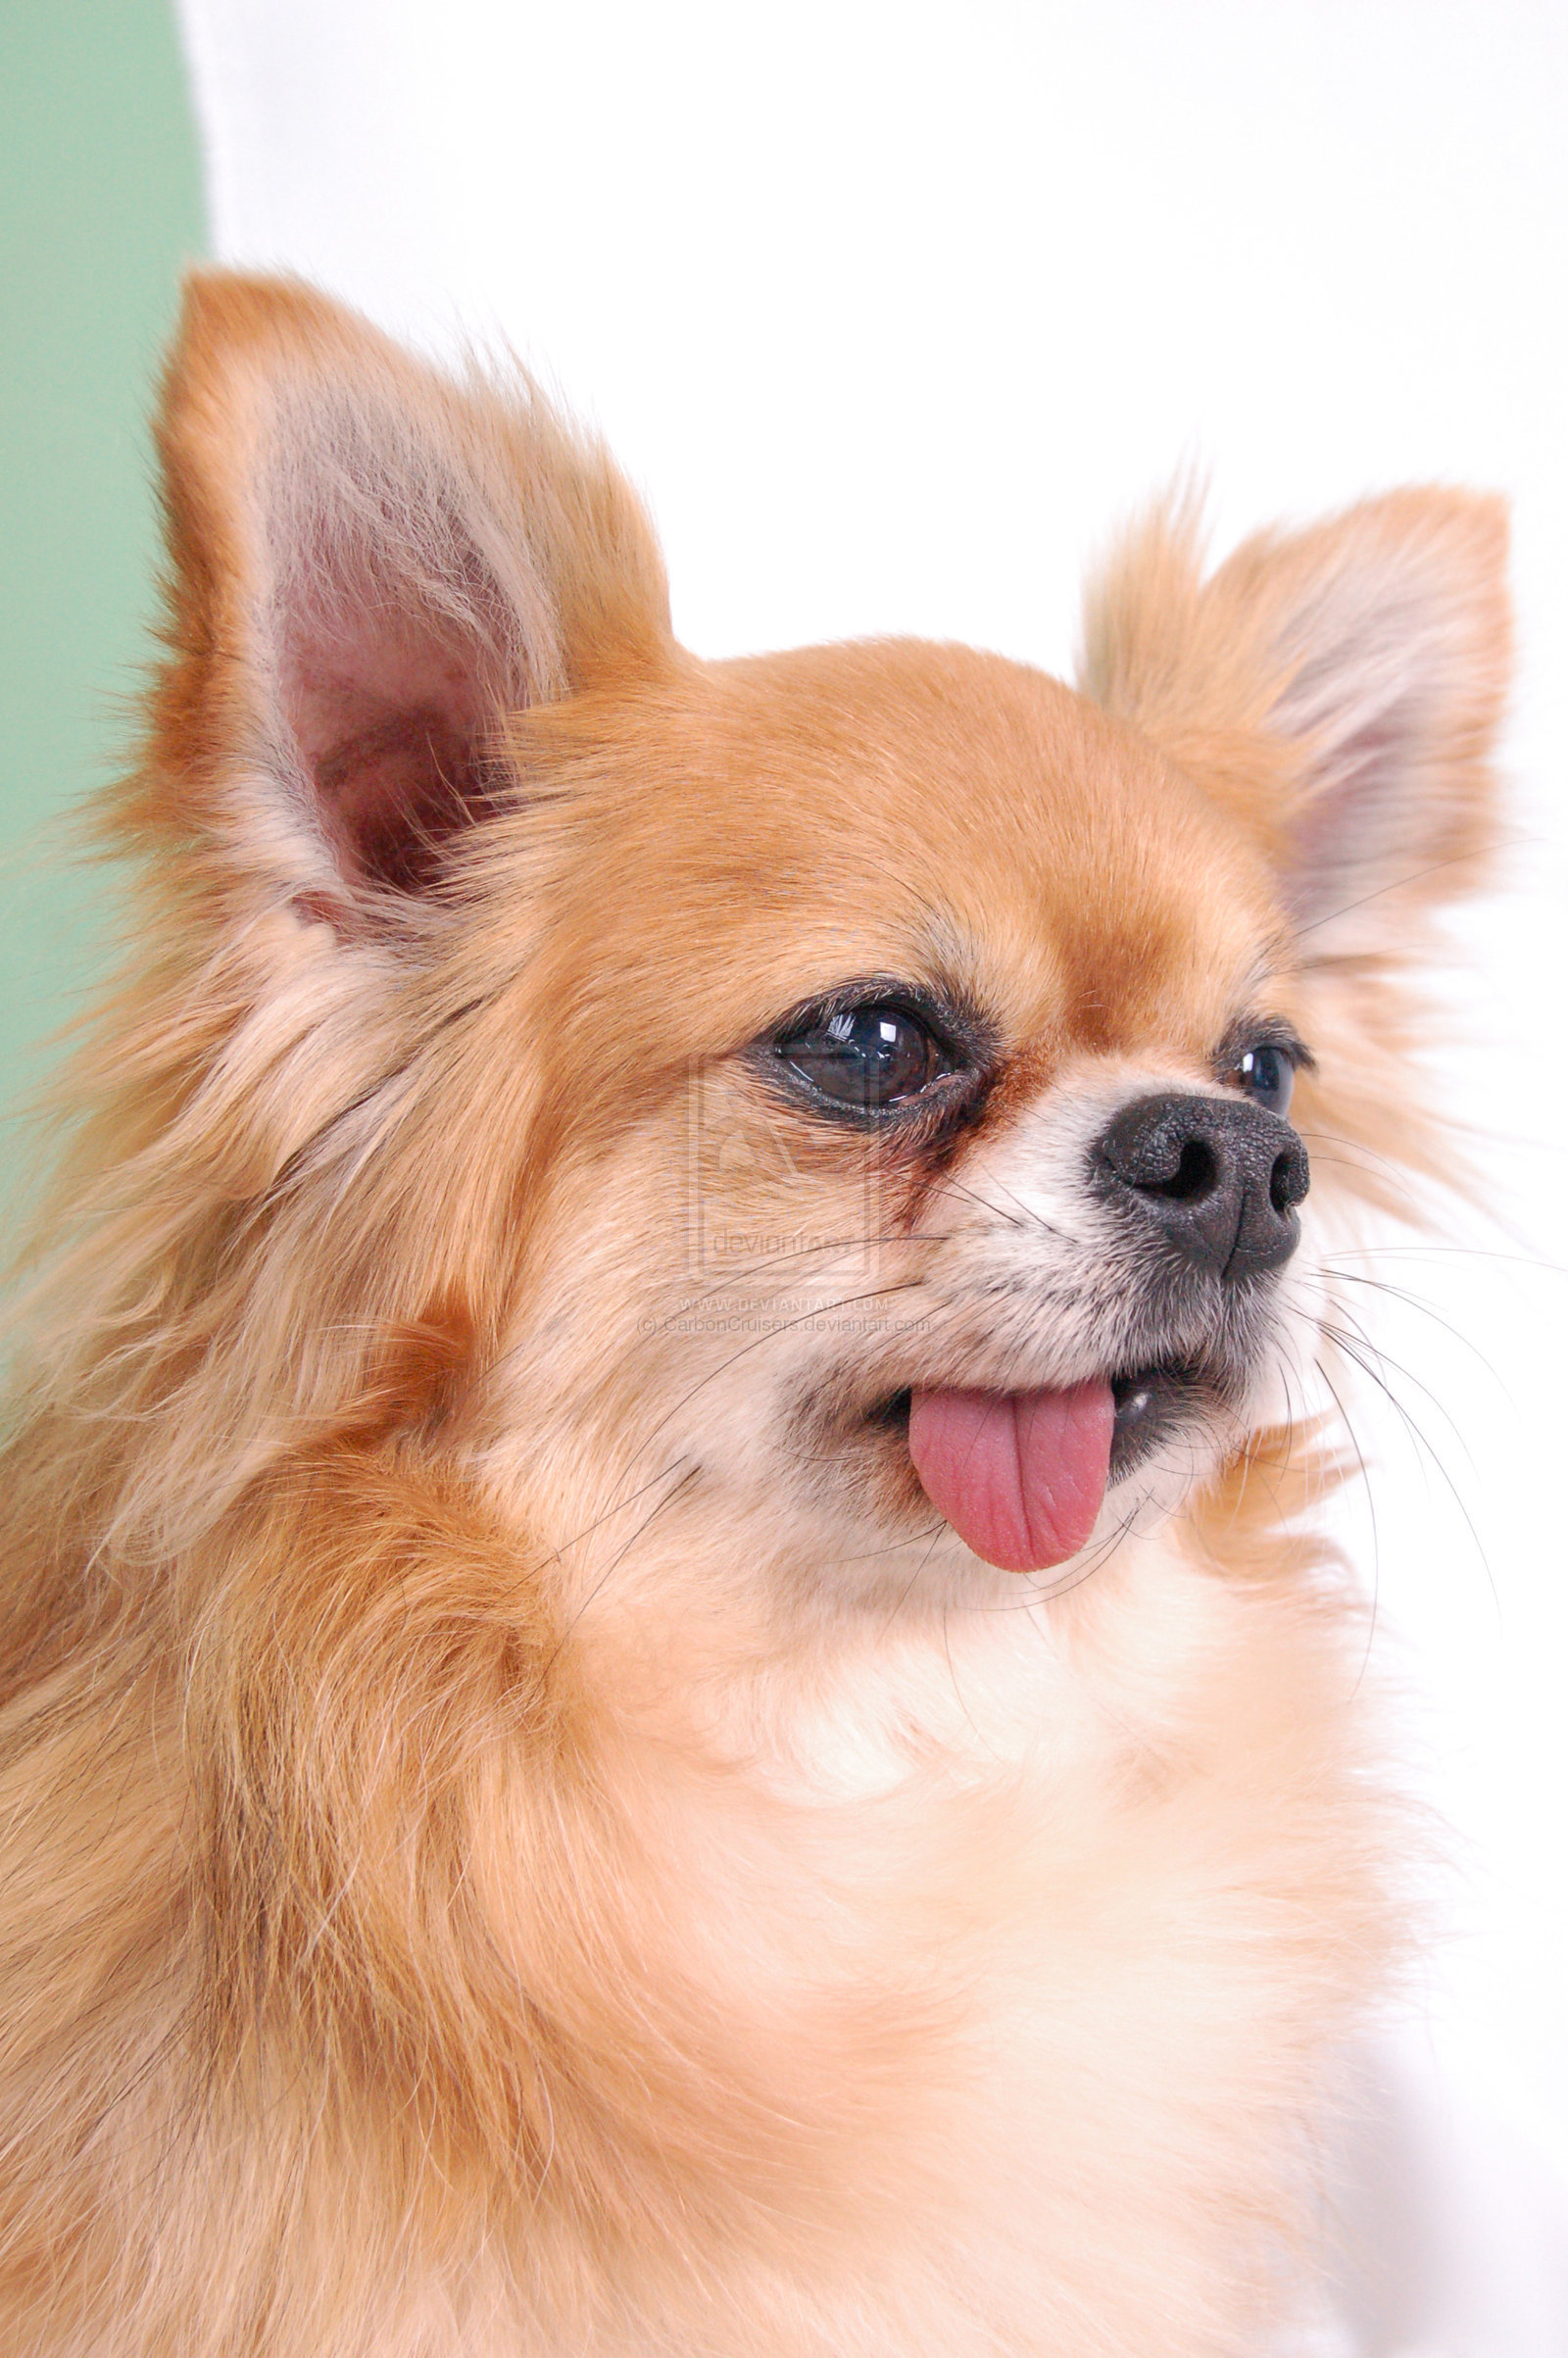 Cute Chihuahuas - Chihuahuas Photo (13347868) - Fanpop